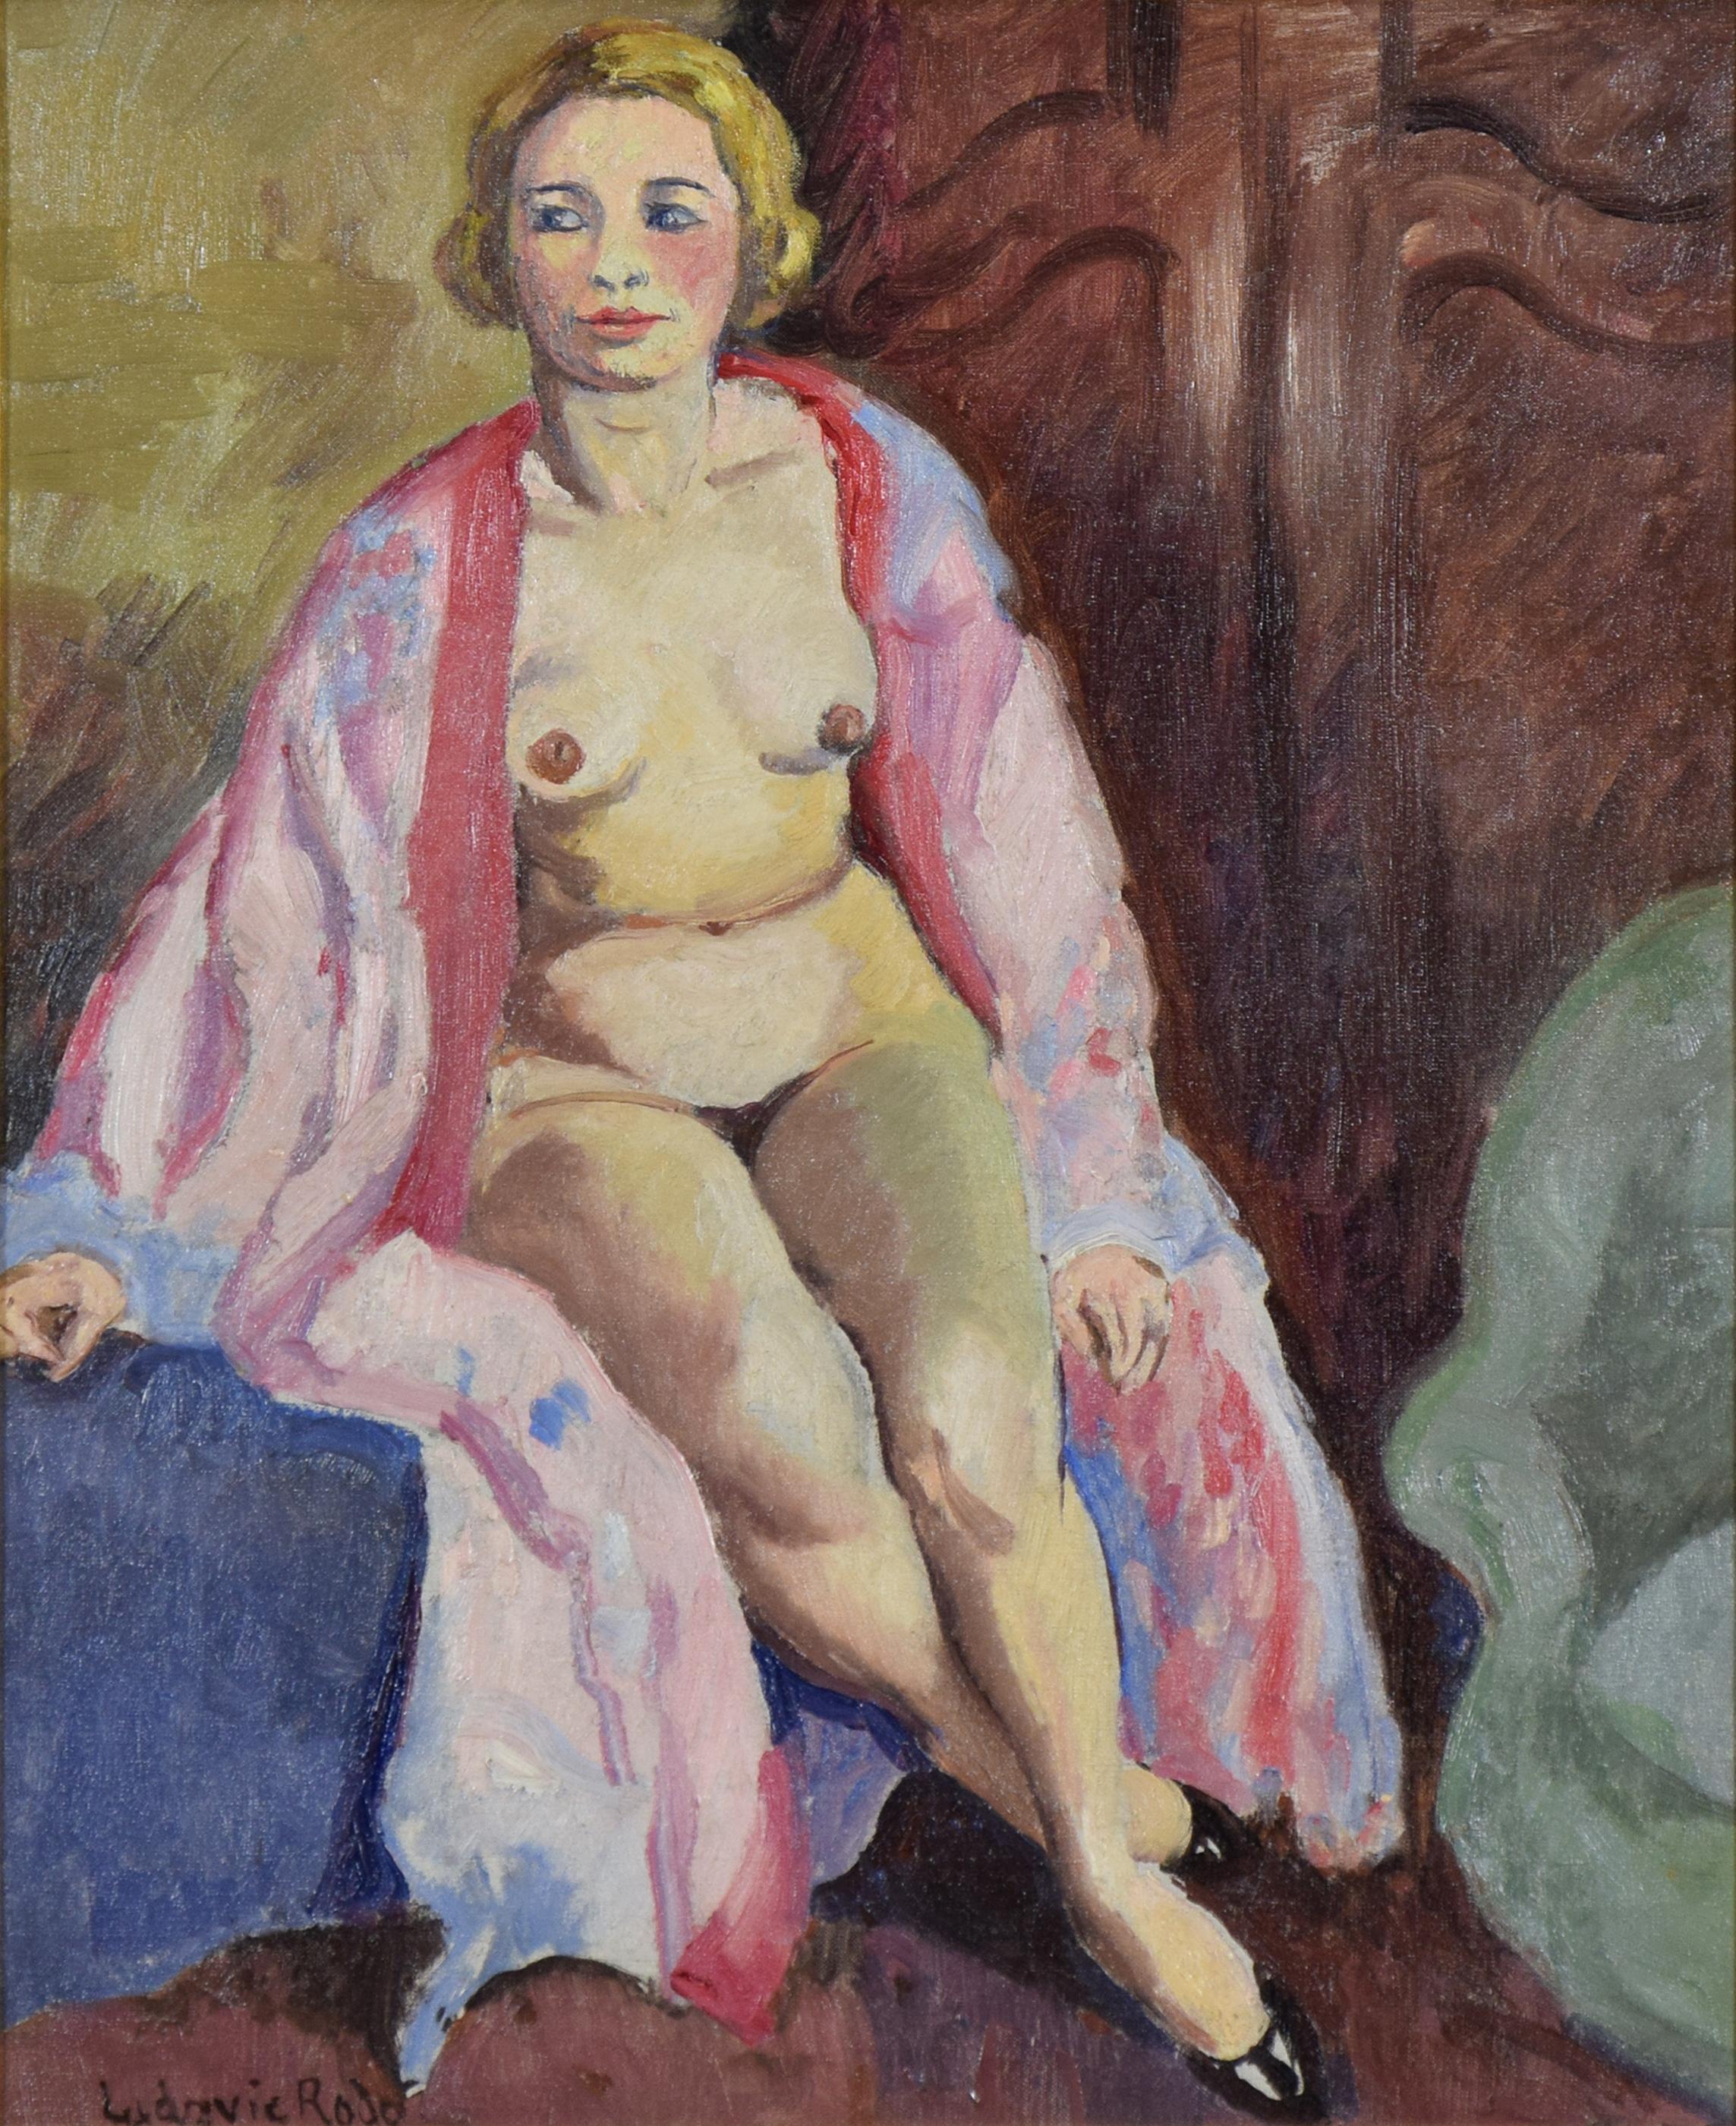 Nu Assise de Ludovic-Rodo Pissarro (1878-1952)
Huile sur toileu2028
55 x 47 cm (21 ⅝ x 18 ½ pouces)
u2028Signé en bas à gauche, Ludovic Rodou2028
Exécuté vers 1910

Cette œuvre est accompagnée d'un certificat d'authenticité de Lélia